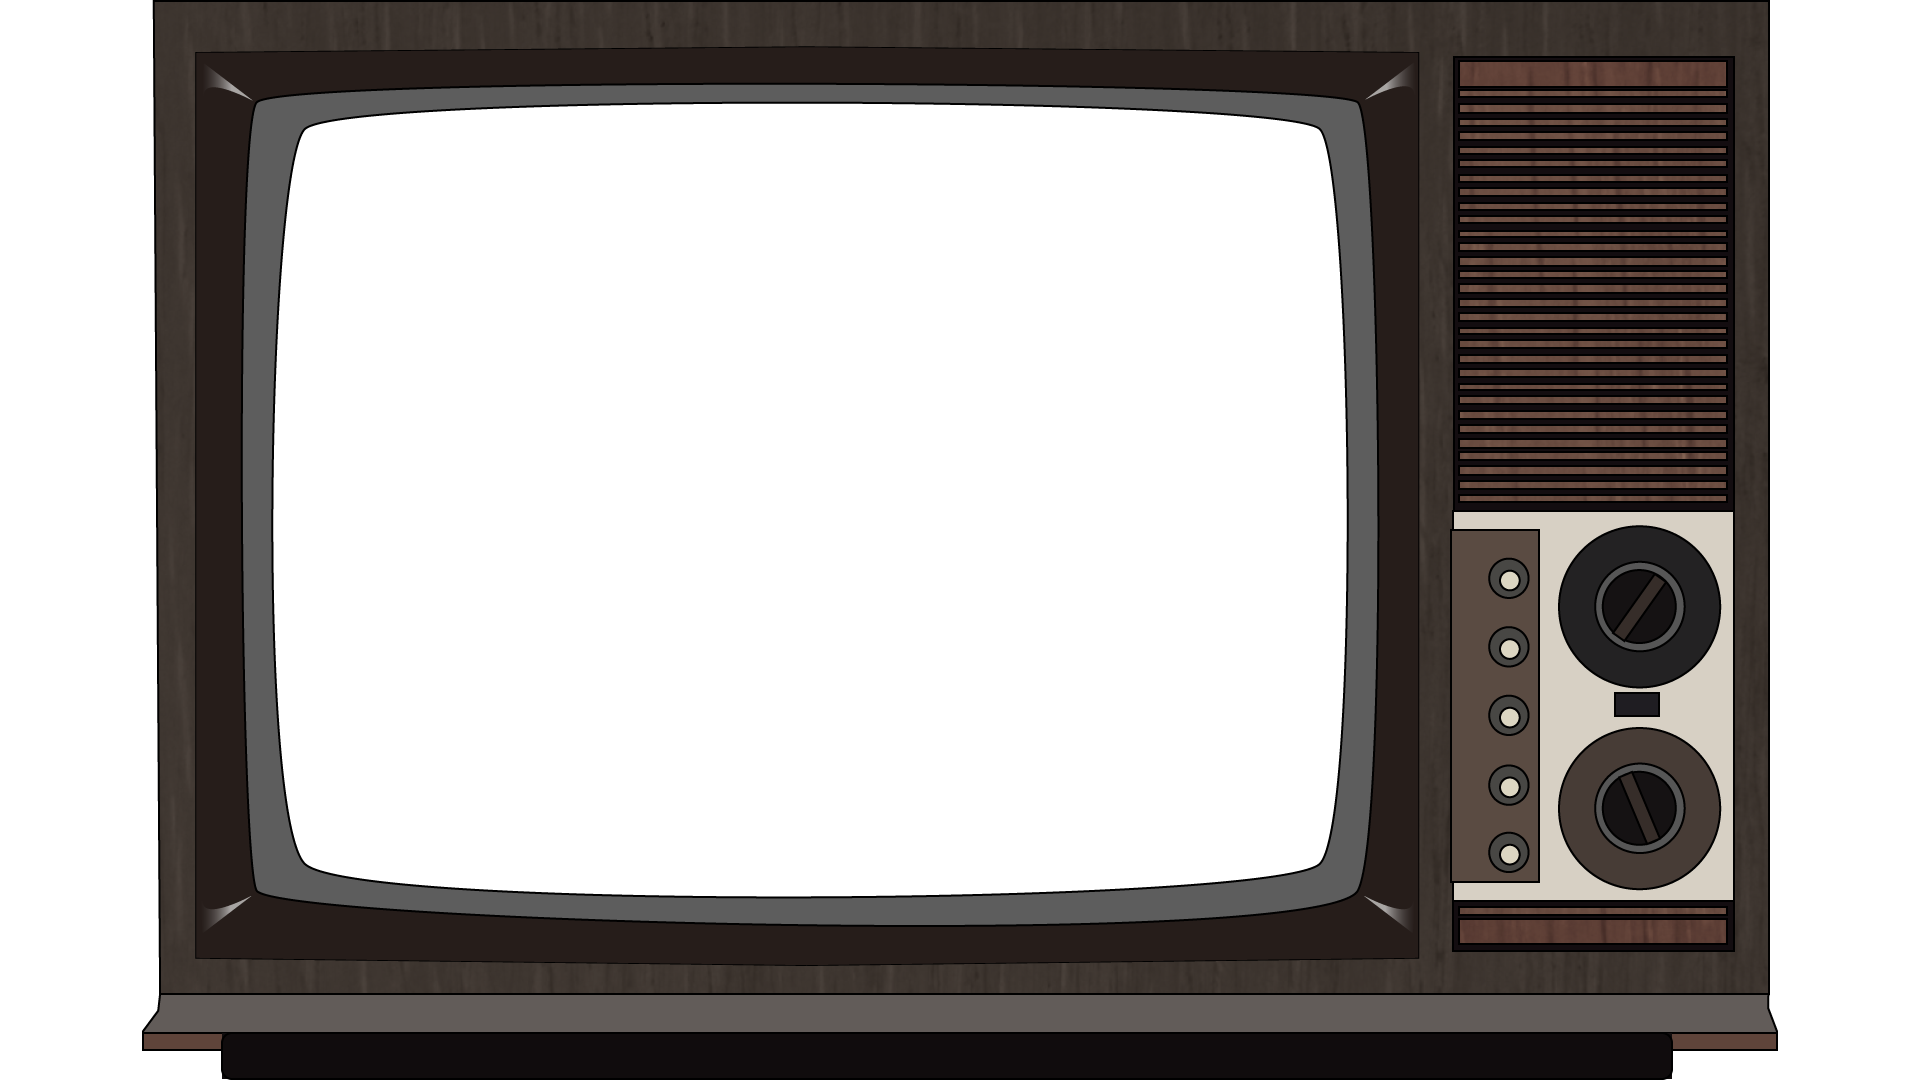 Alter Fernseher